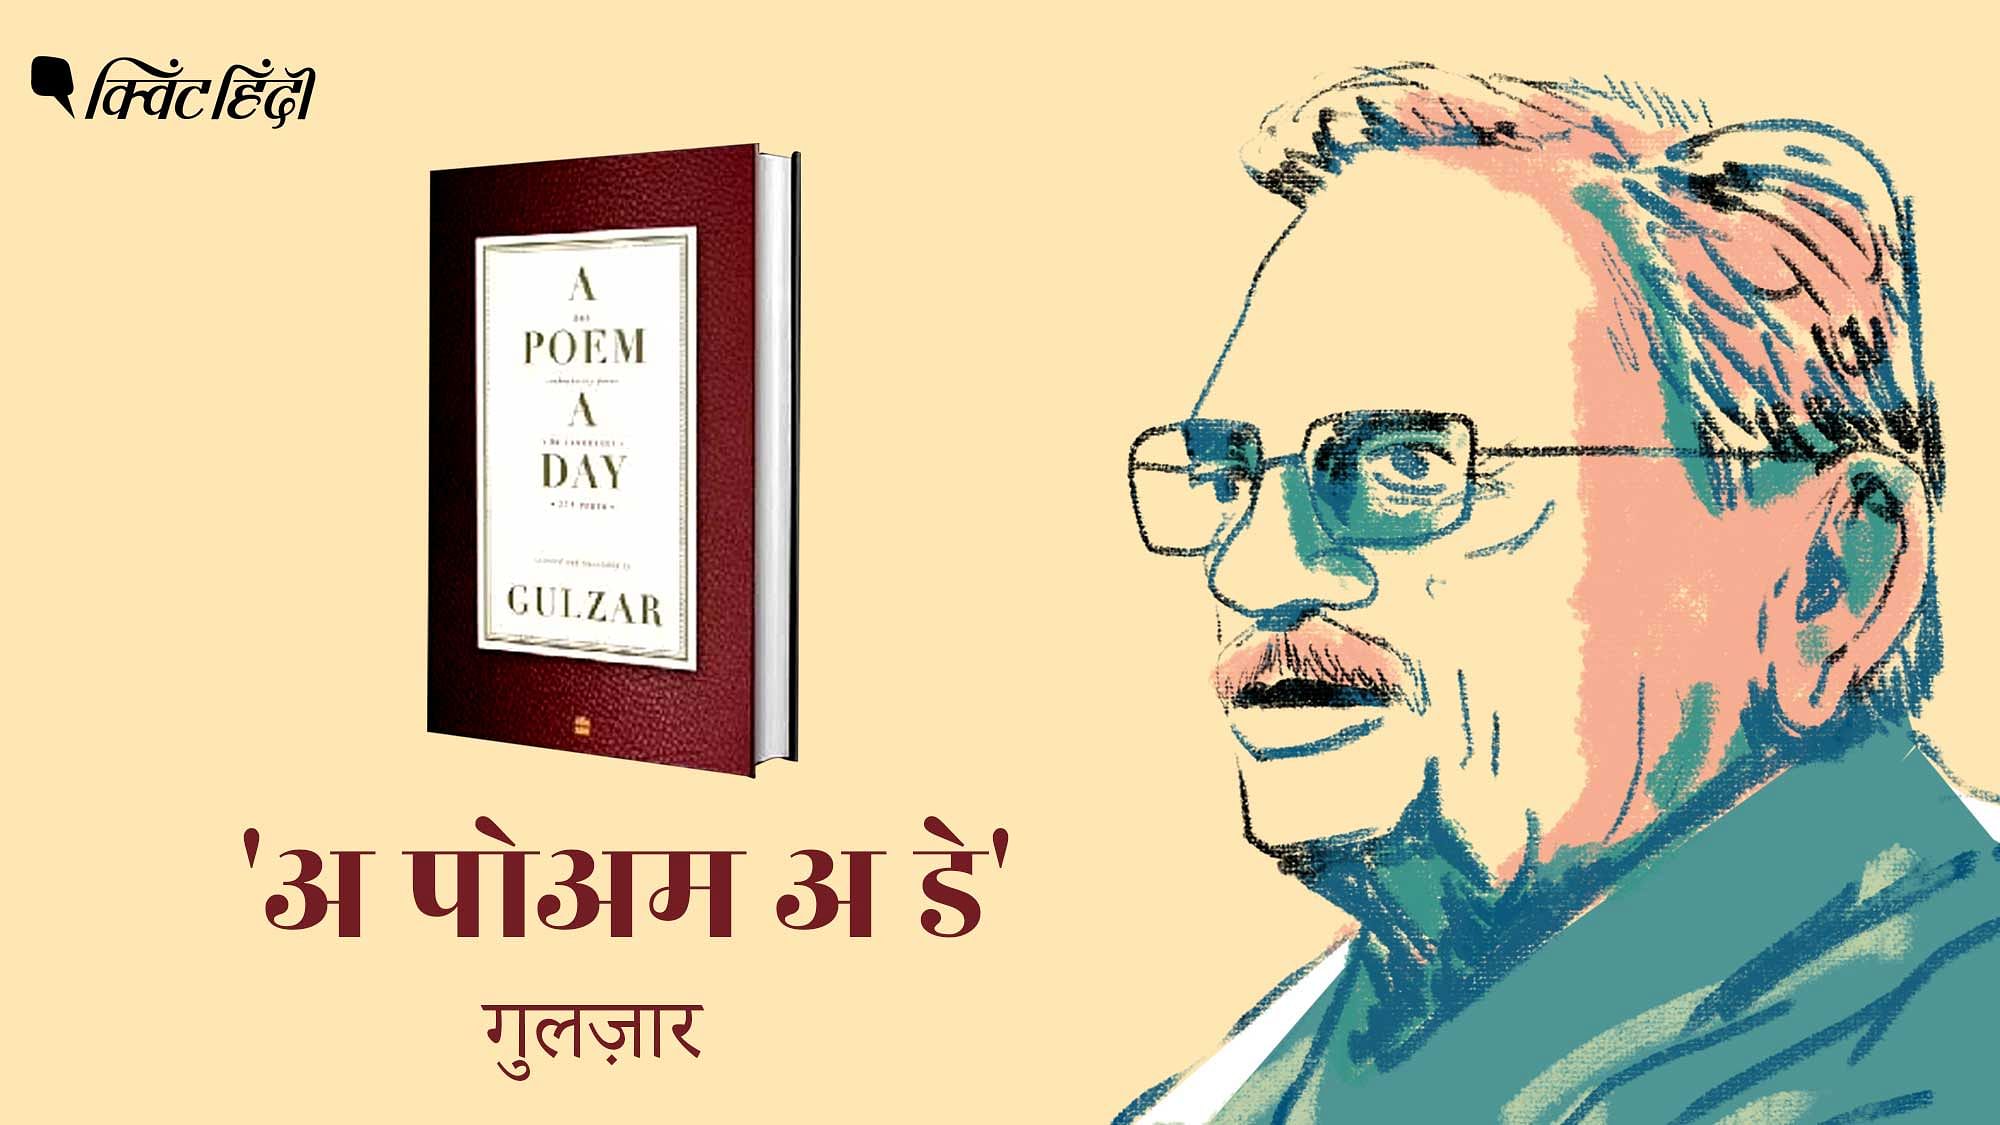 गुलजार किताब से मराठी, पंजाबी, और नार्थ-ईस्ट की भाषा से अनुवादित हैं कविताएं पढ़ रहे हैं.&nbsp;